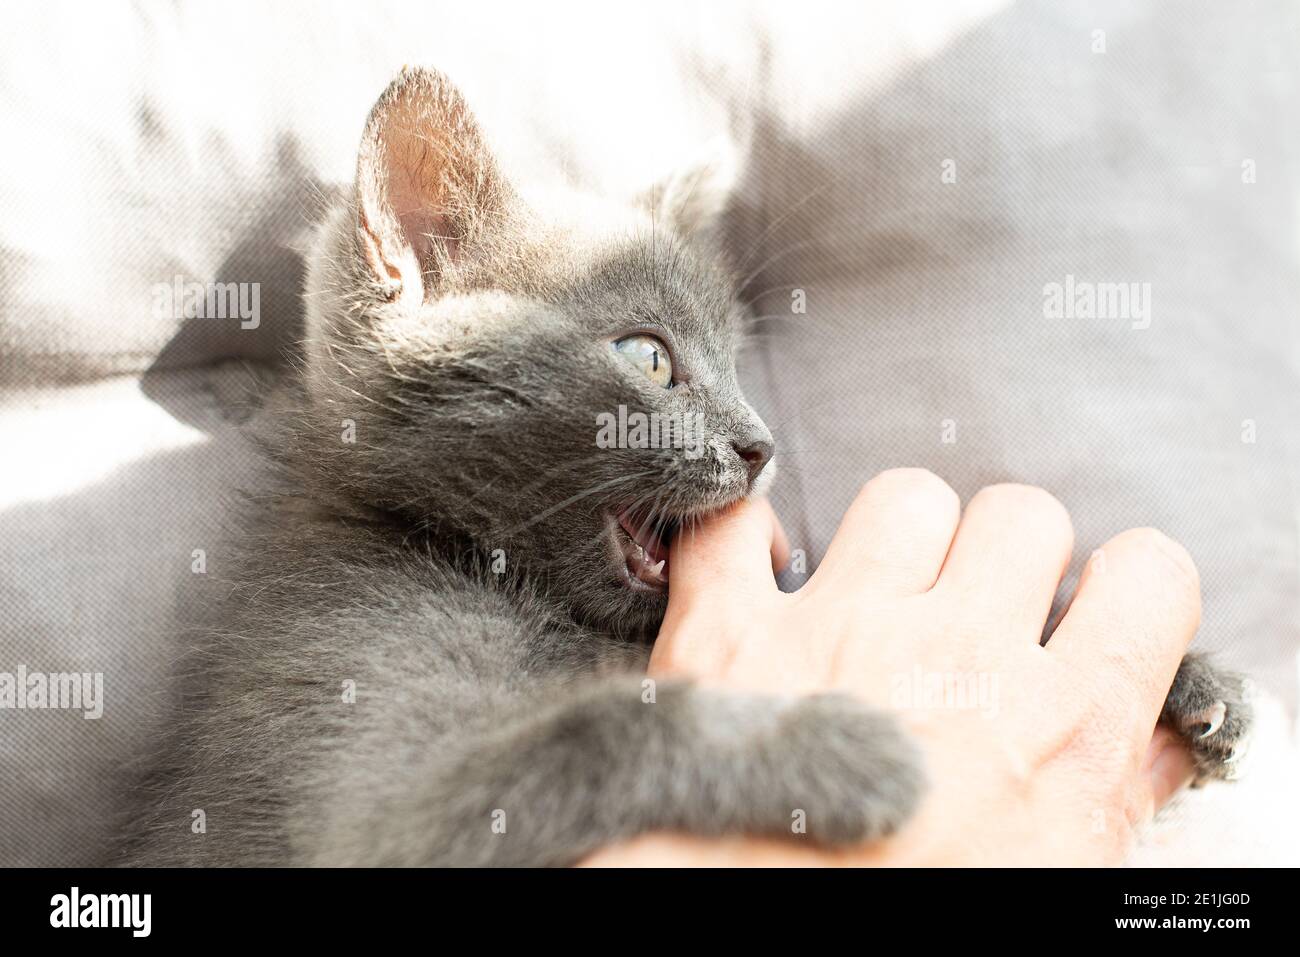 aggressive grey cat bites a person.  Stock Photo